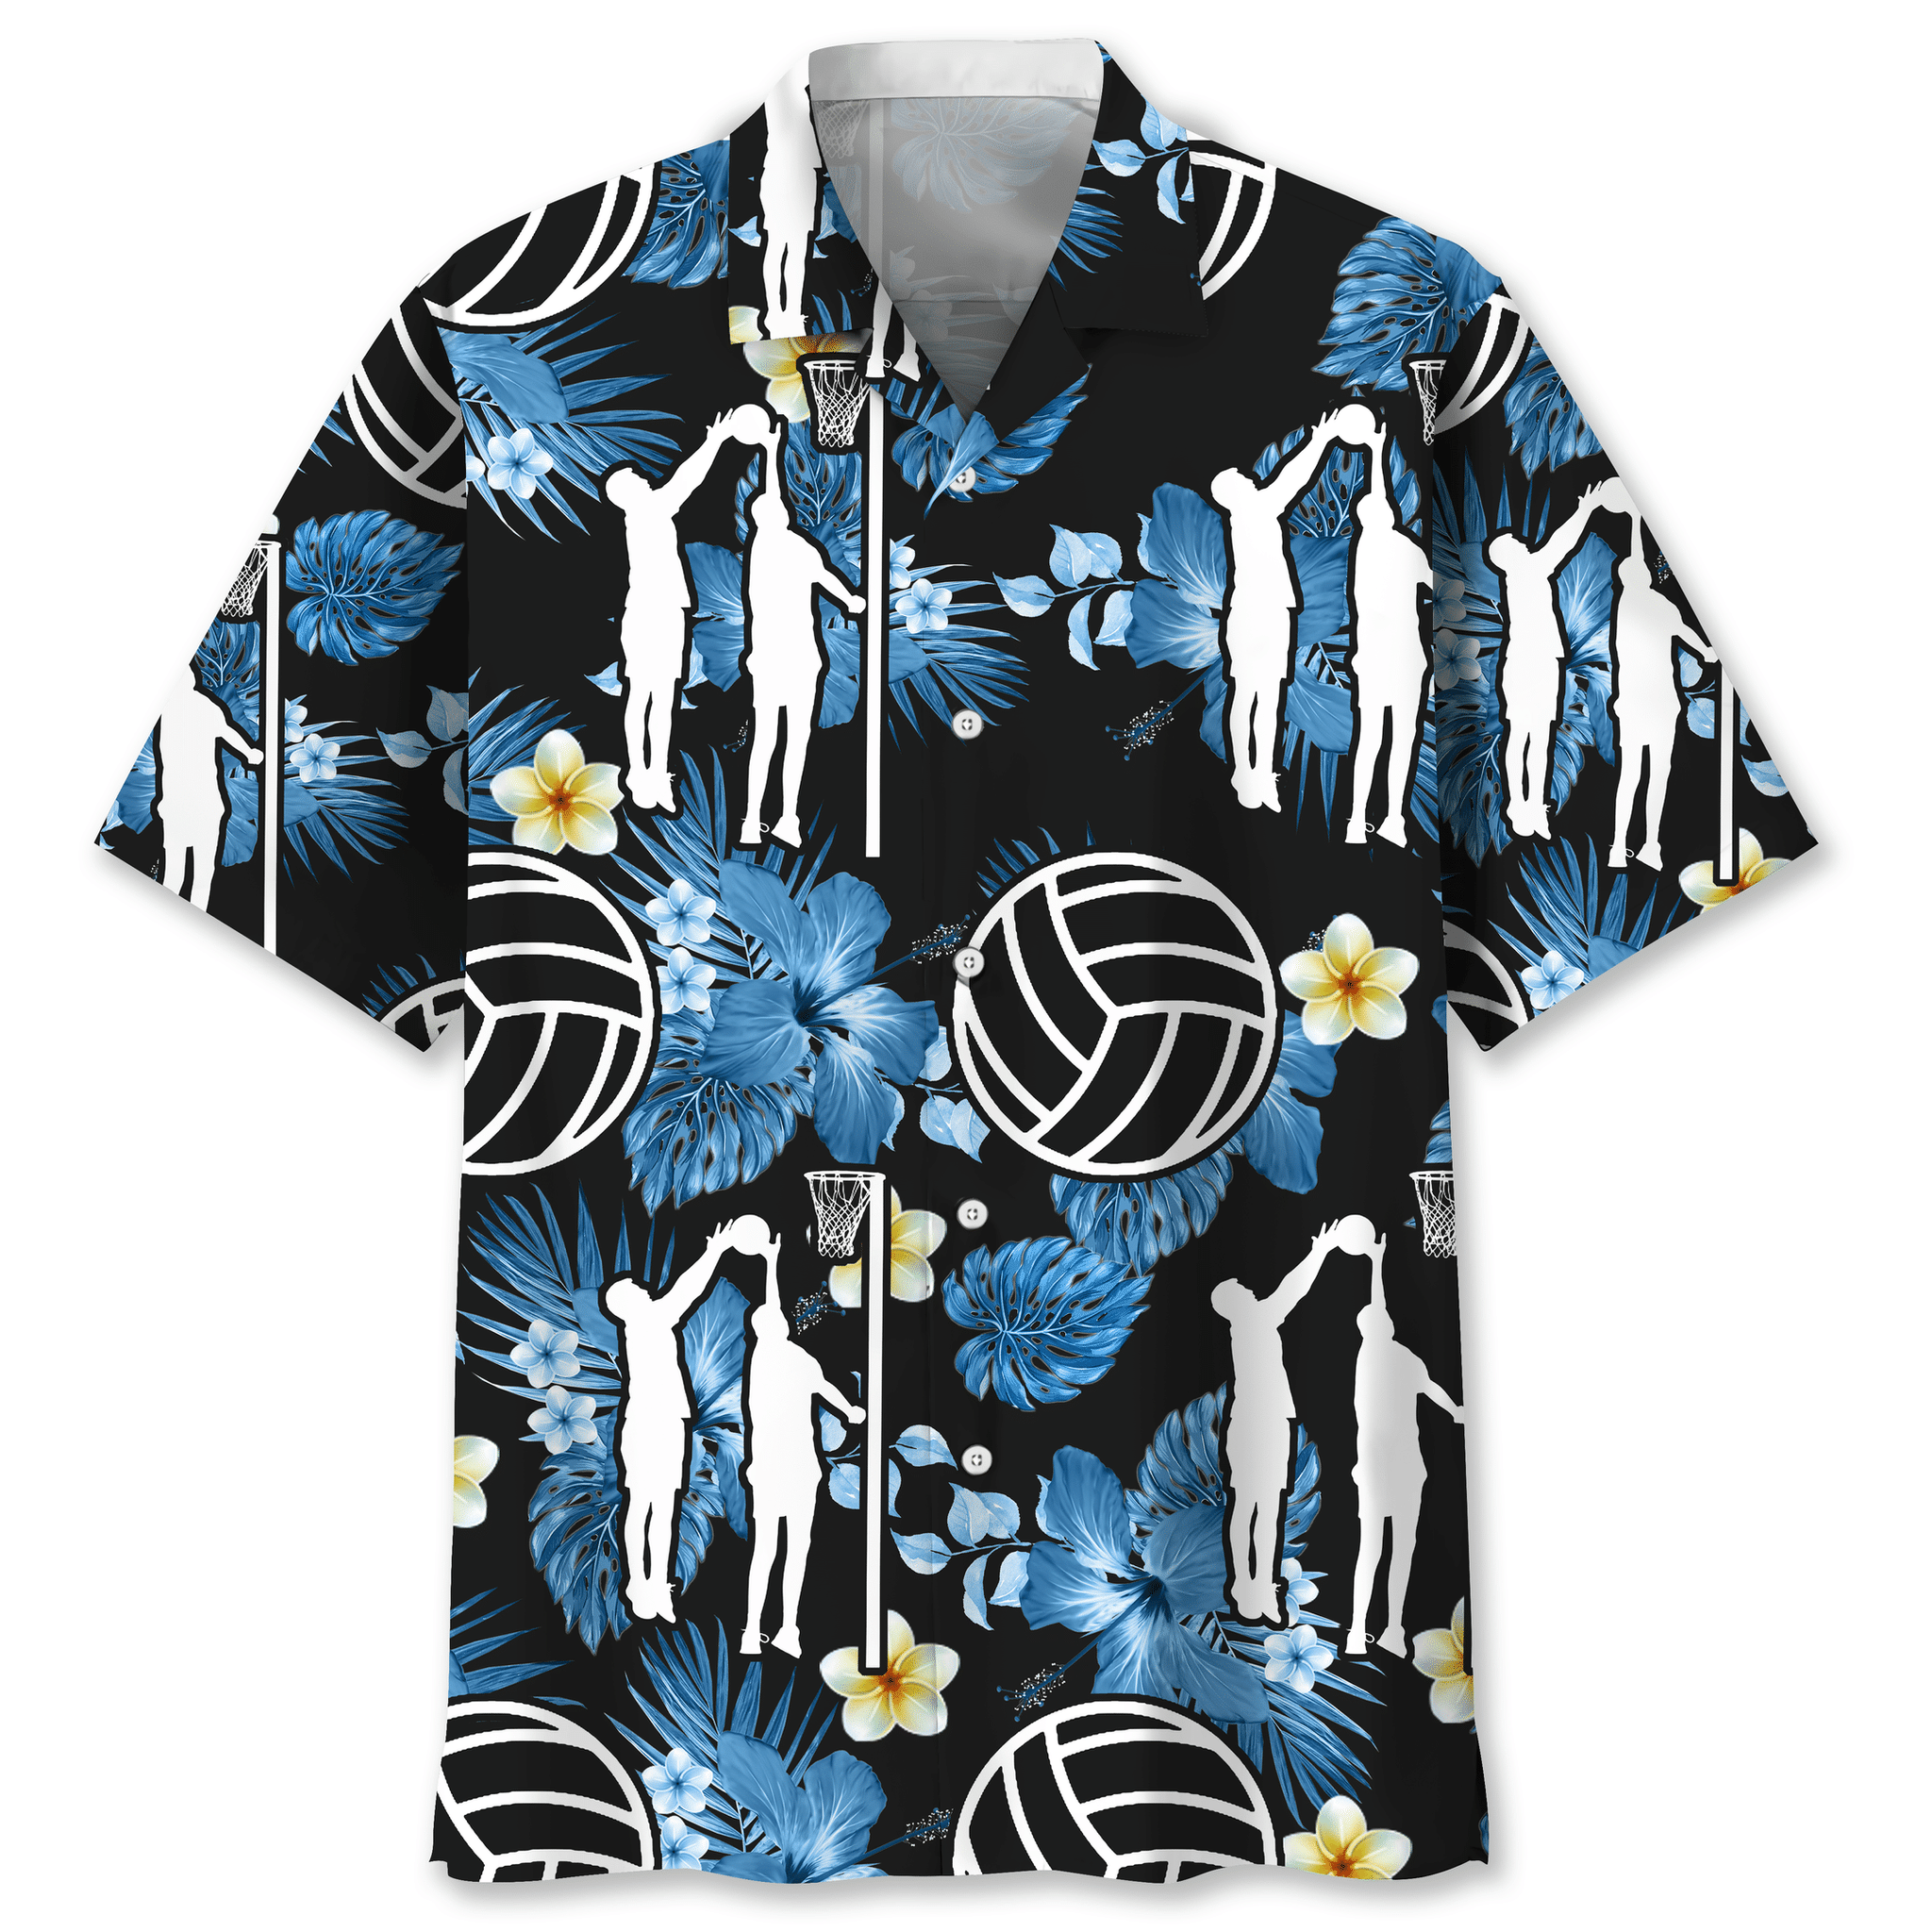 Netball nature Hawaiian shirt and short – LIMITED EDITION